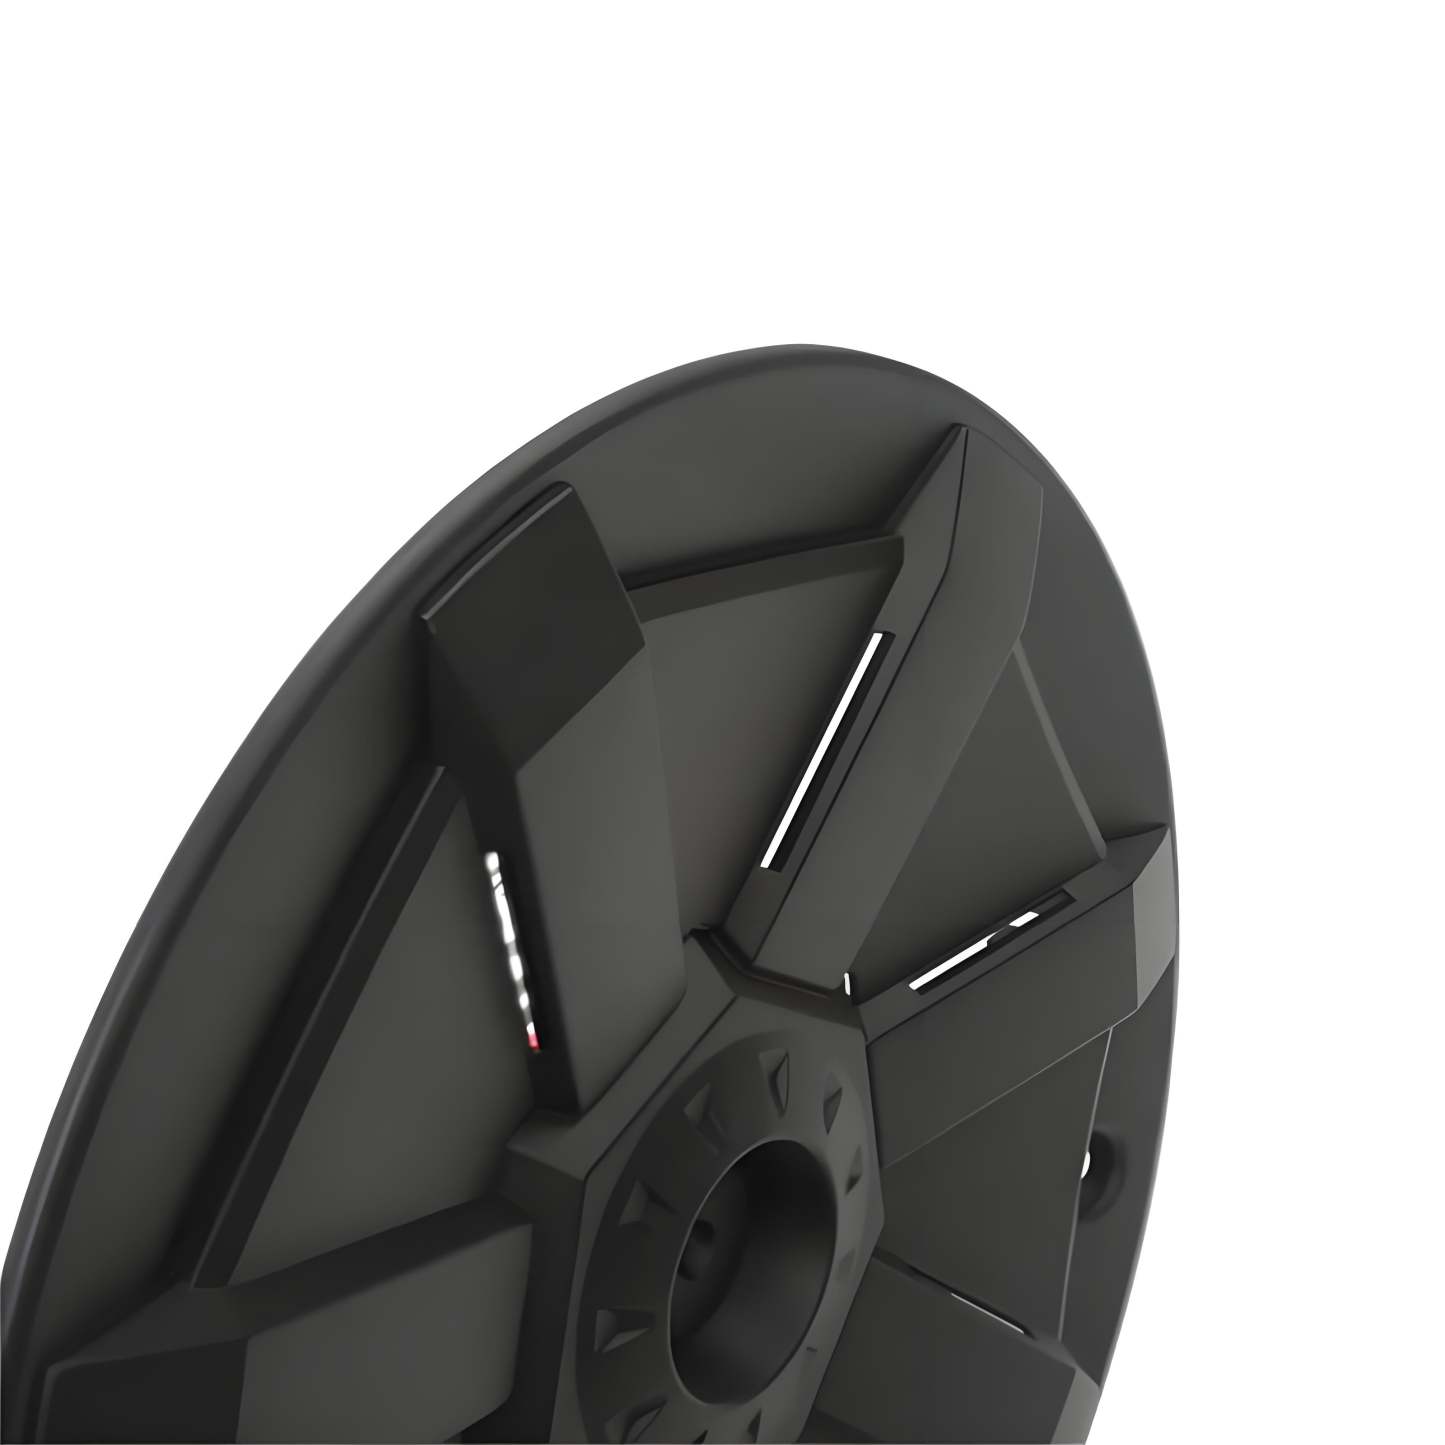 Tesstudio 19" Best Wheel Covers Cybertruck Style for Tesla Model Y (4PCS)